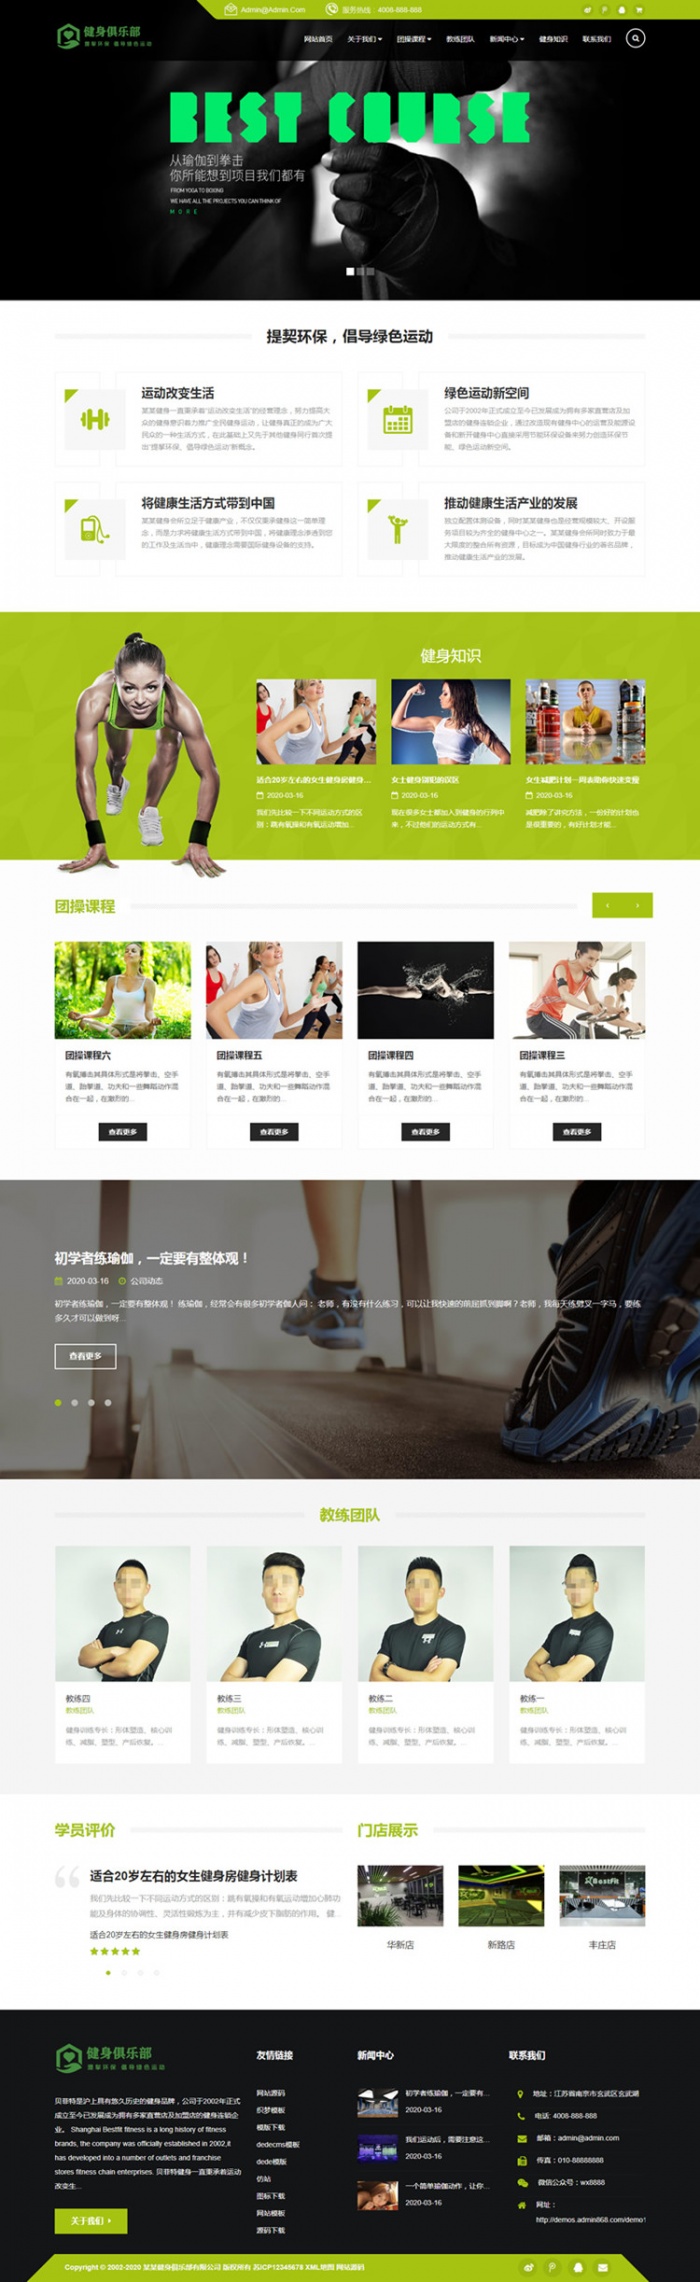 响应式织梦健身俱乐部类企业网站模板下载 可自适应手机版